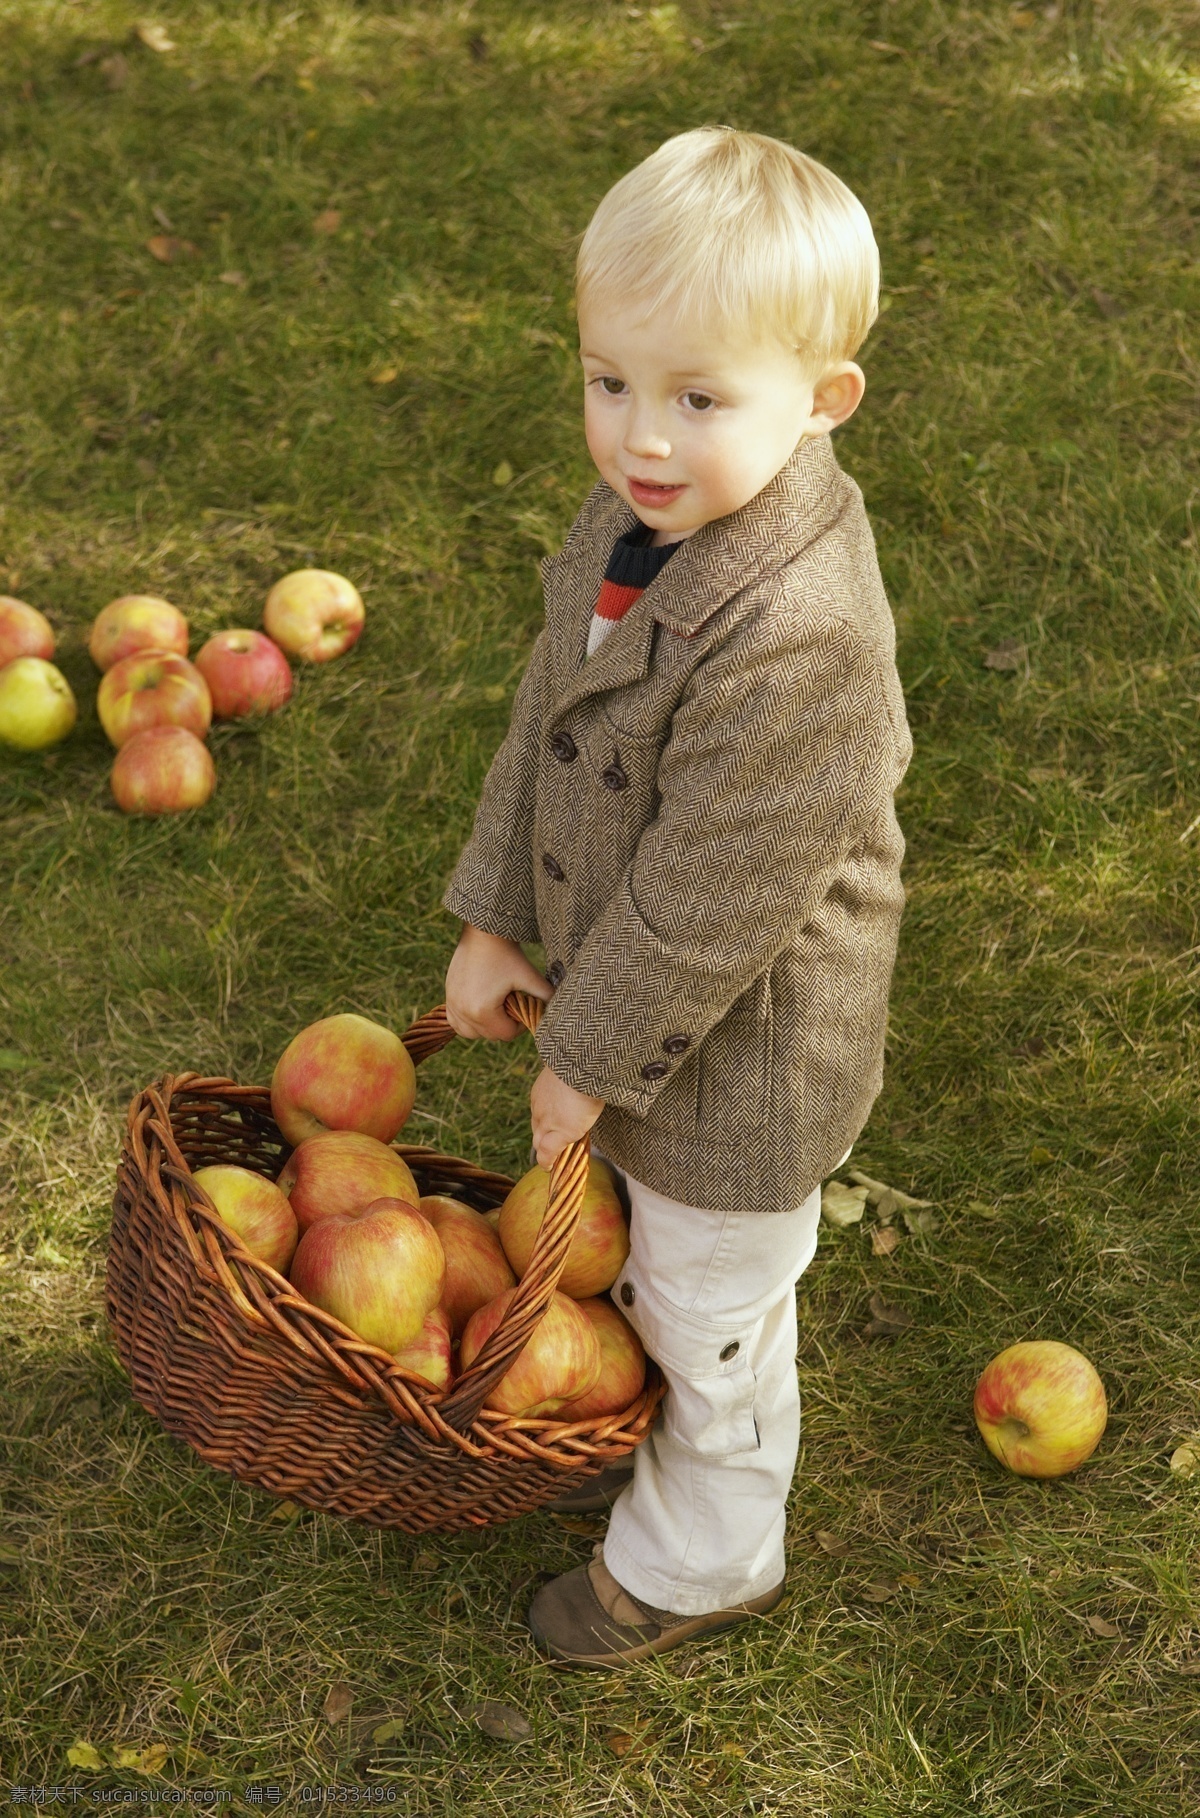 苹果 儿童摄影 苹果摄影 水果 篮子 儿童 小孩 草地 田野 野外 郊区 人物 人物摄影 人物素材 职业人物 生活人物 人物图片